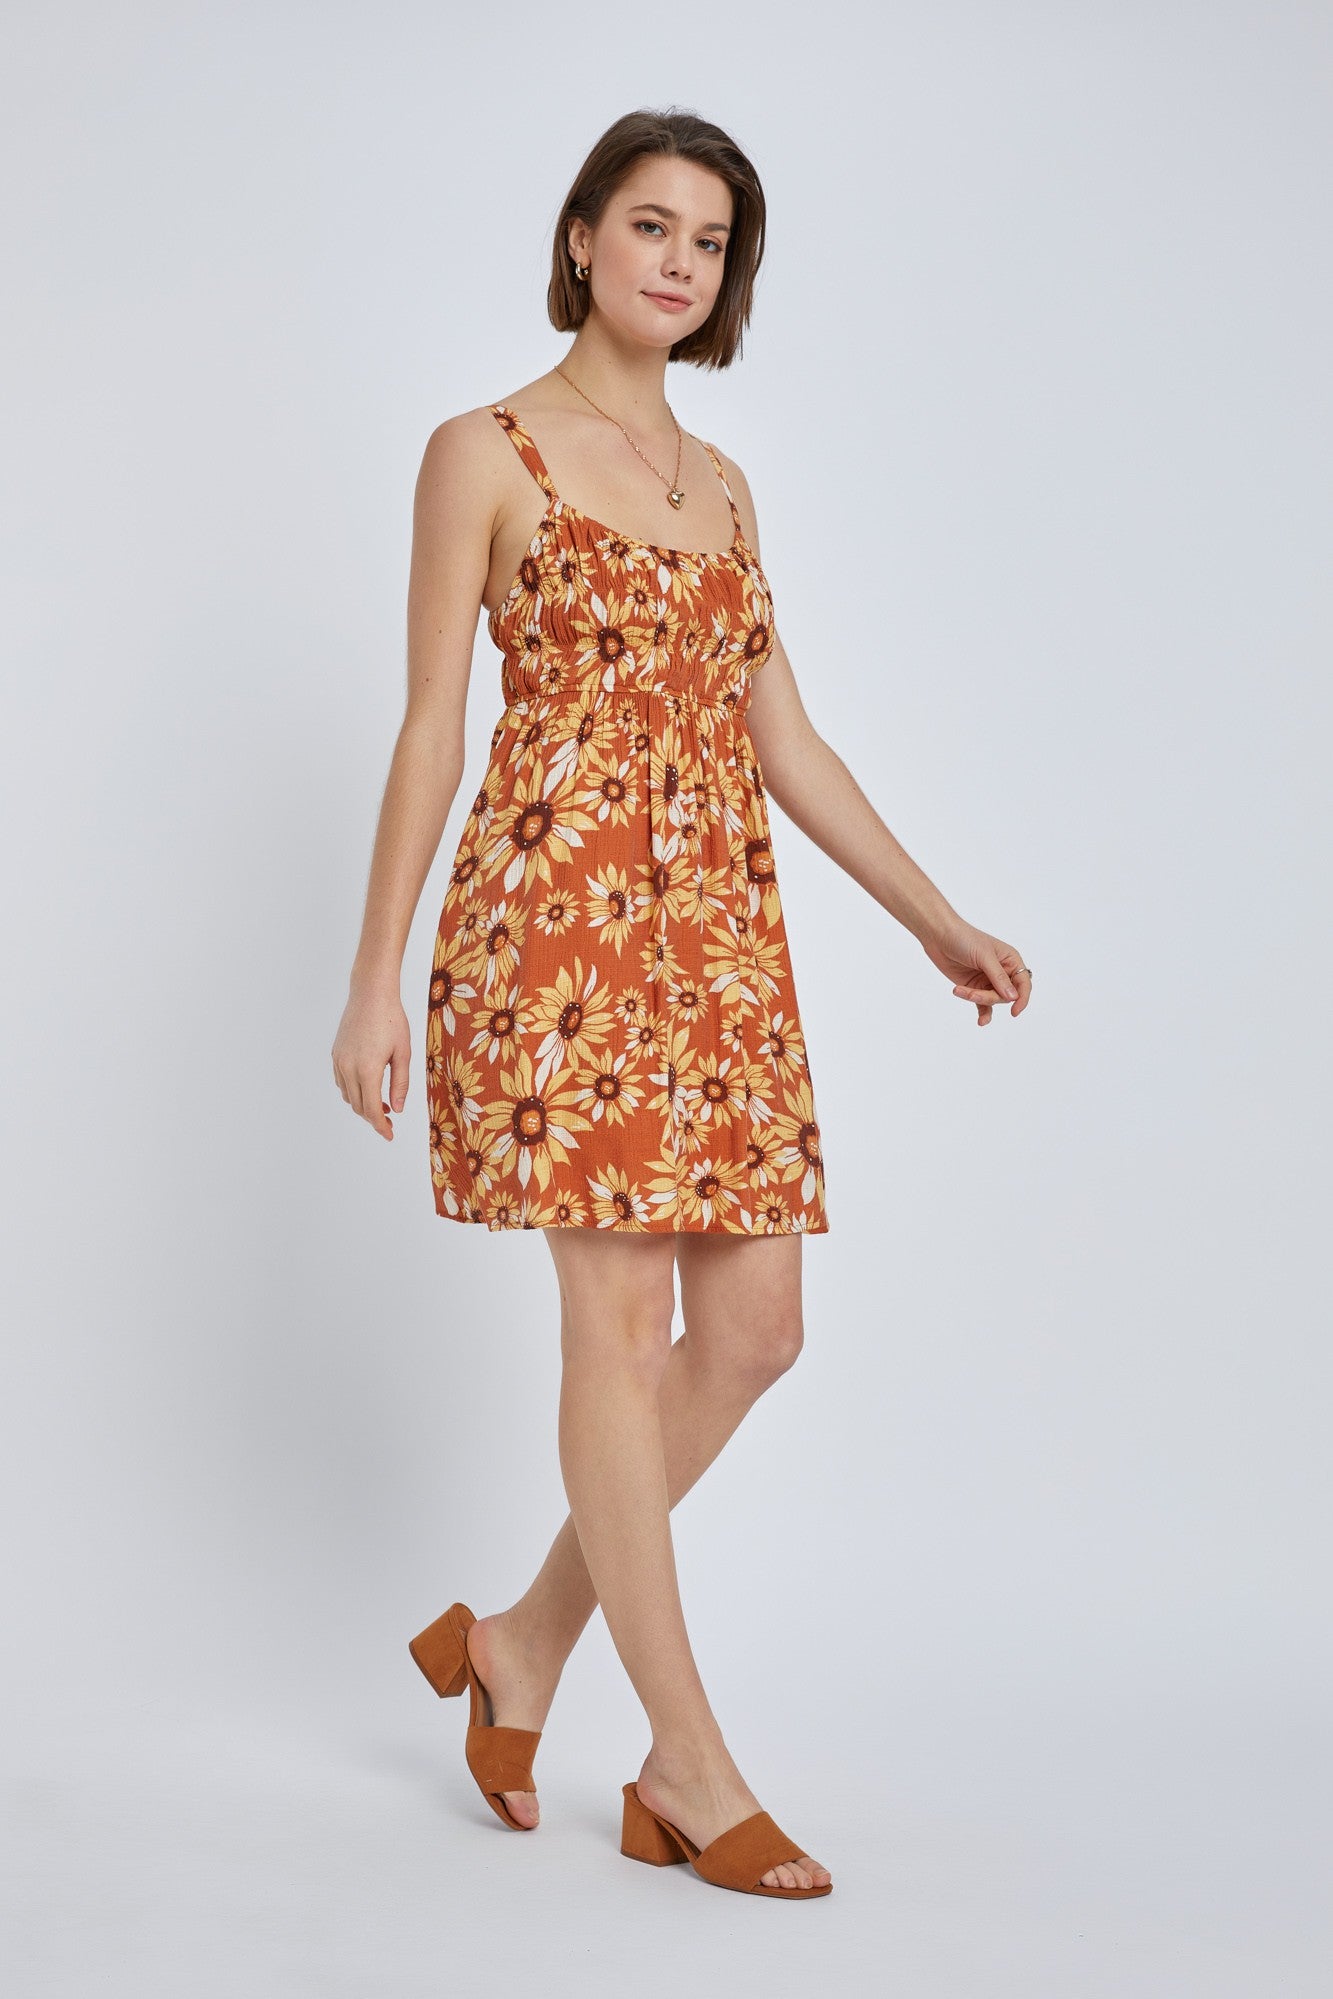 Dress Sunflower Terracotta-hotRAGS.com